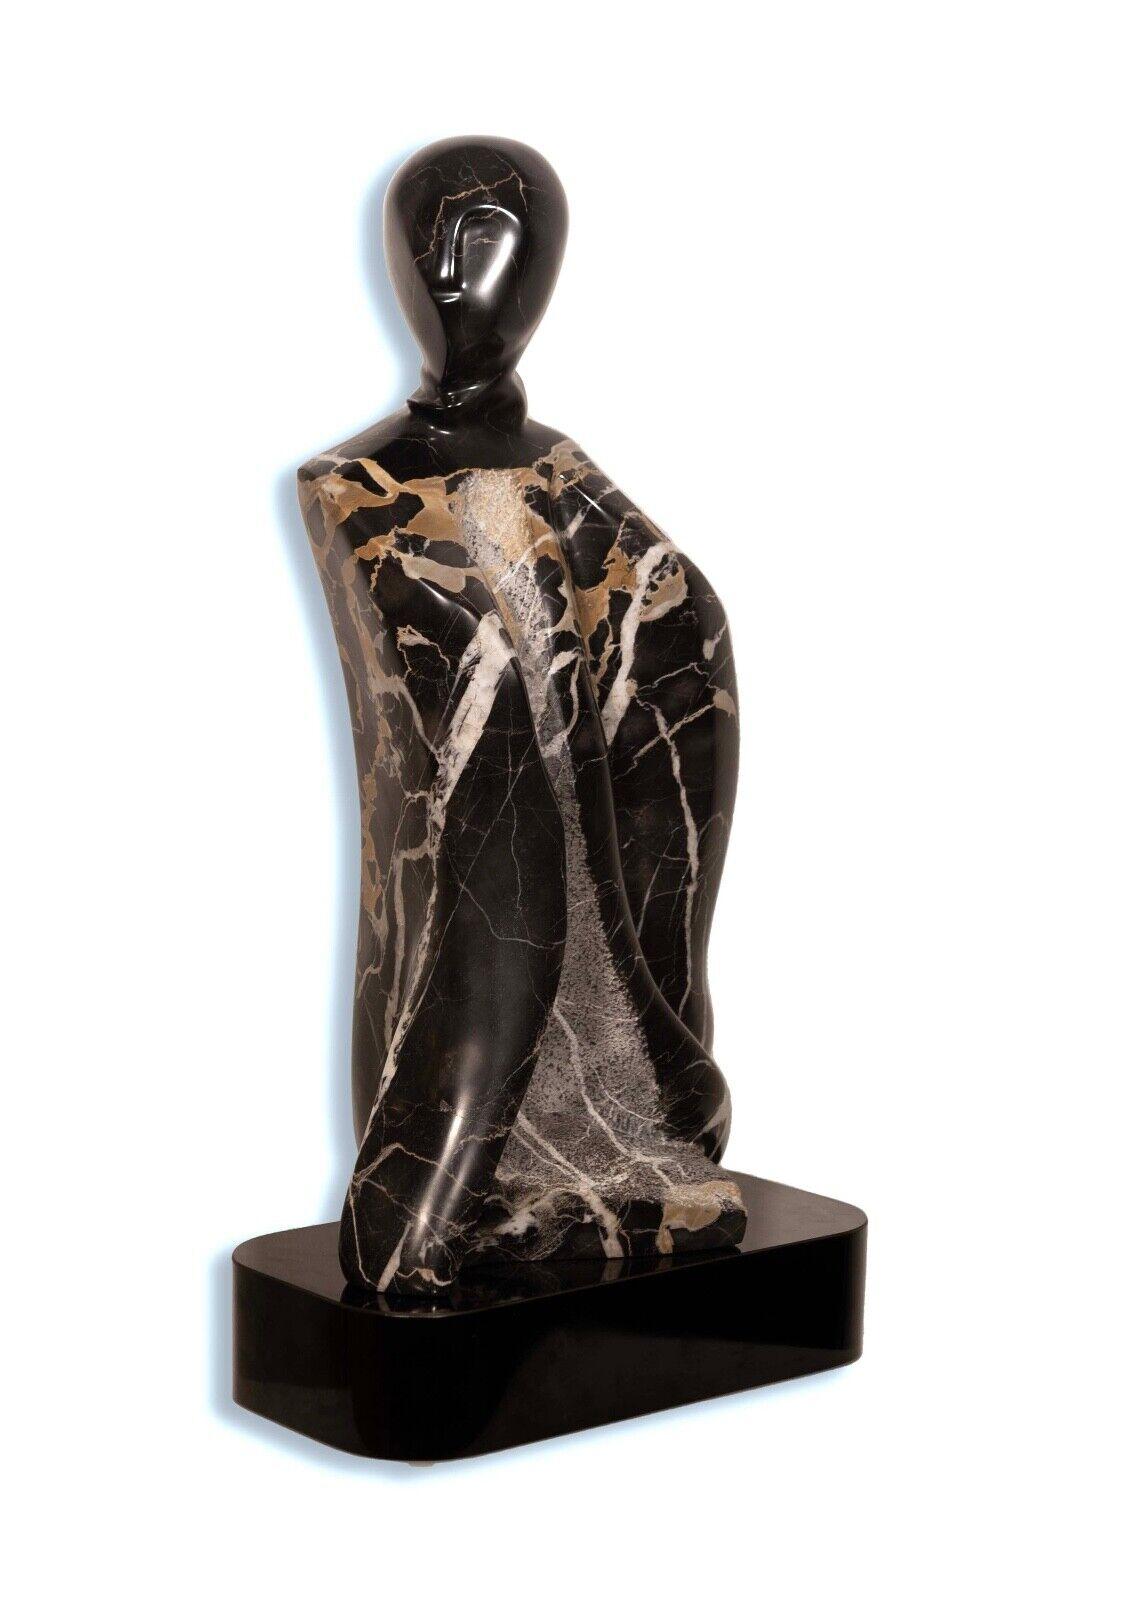 Une élégante sculpture figurative abstraite contemporaine en marbre sur une base signée Lora Ross. Un merveilleux accent moderne dans un espace. Provenant d'une collection privée ; acheté à l'origine dans une galerie de Palm Springs, FL. Dimensions